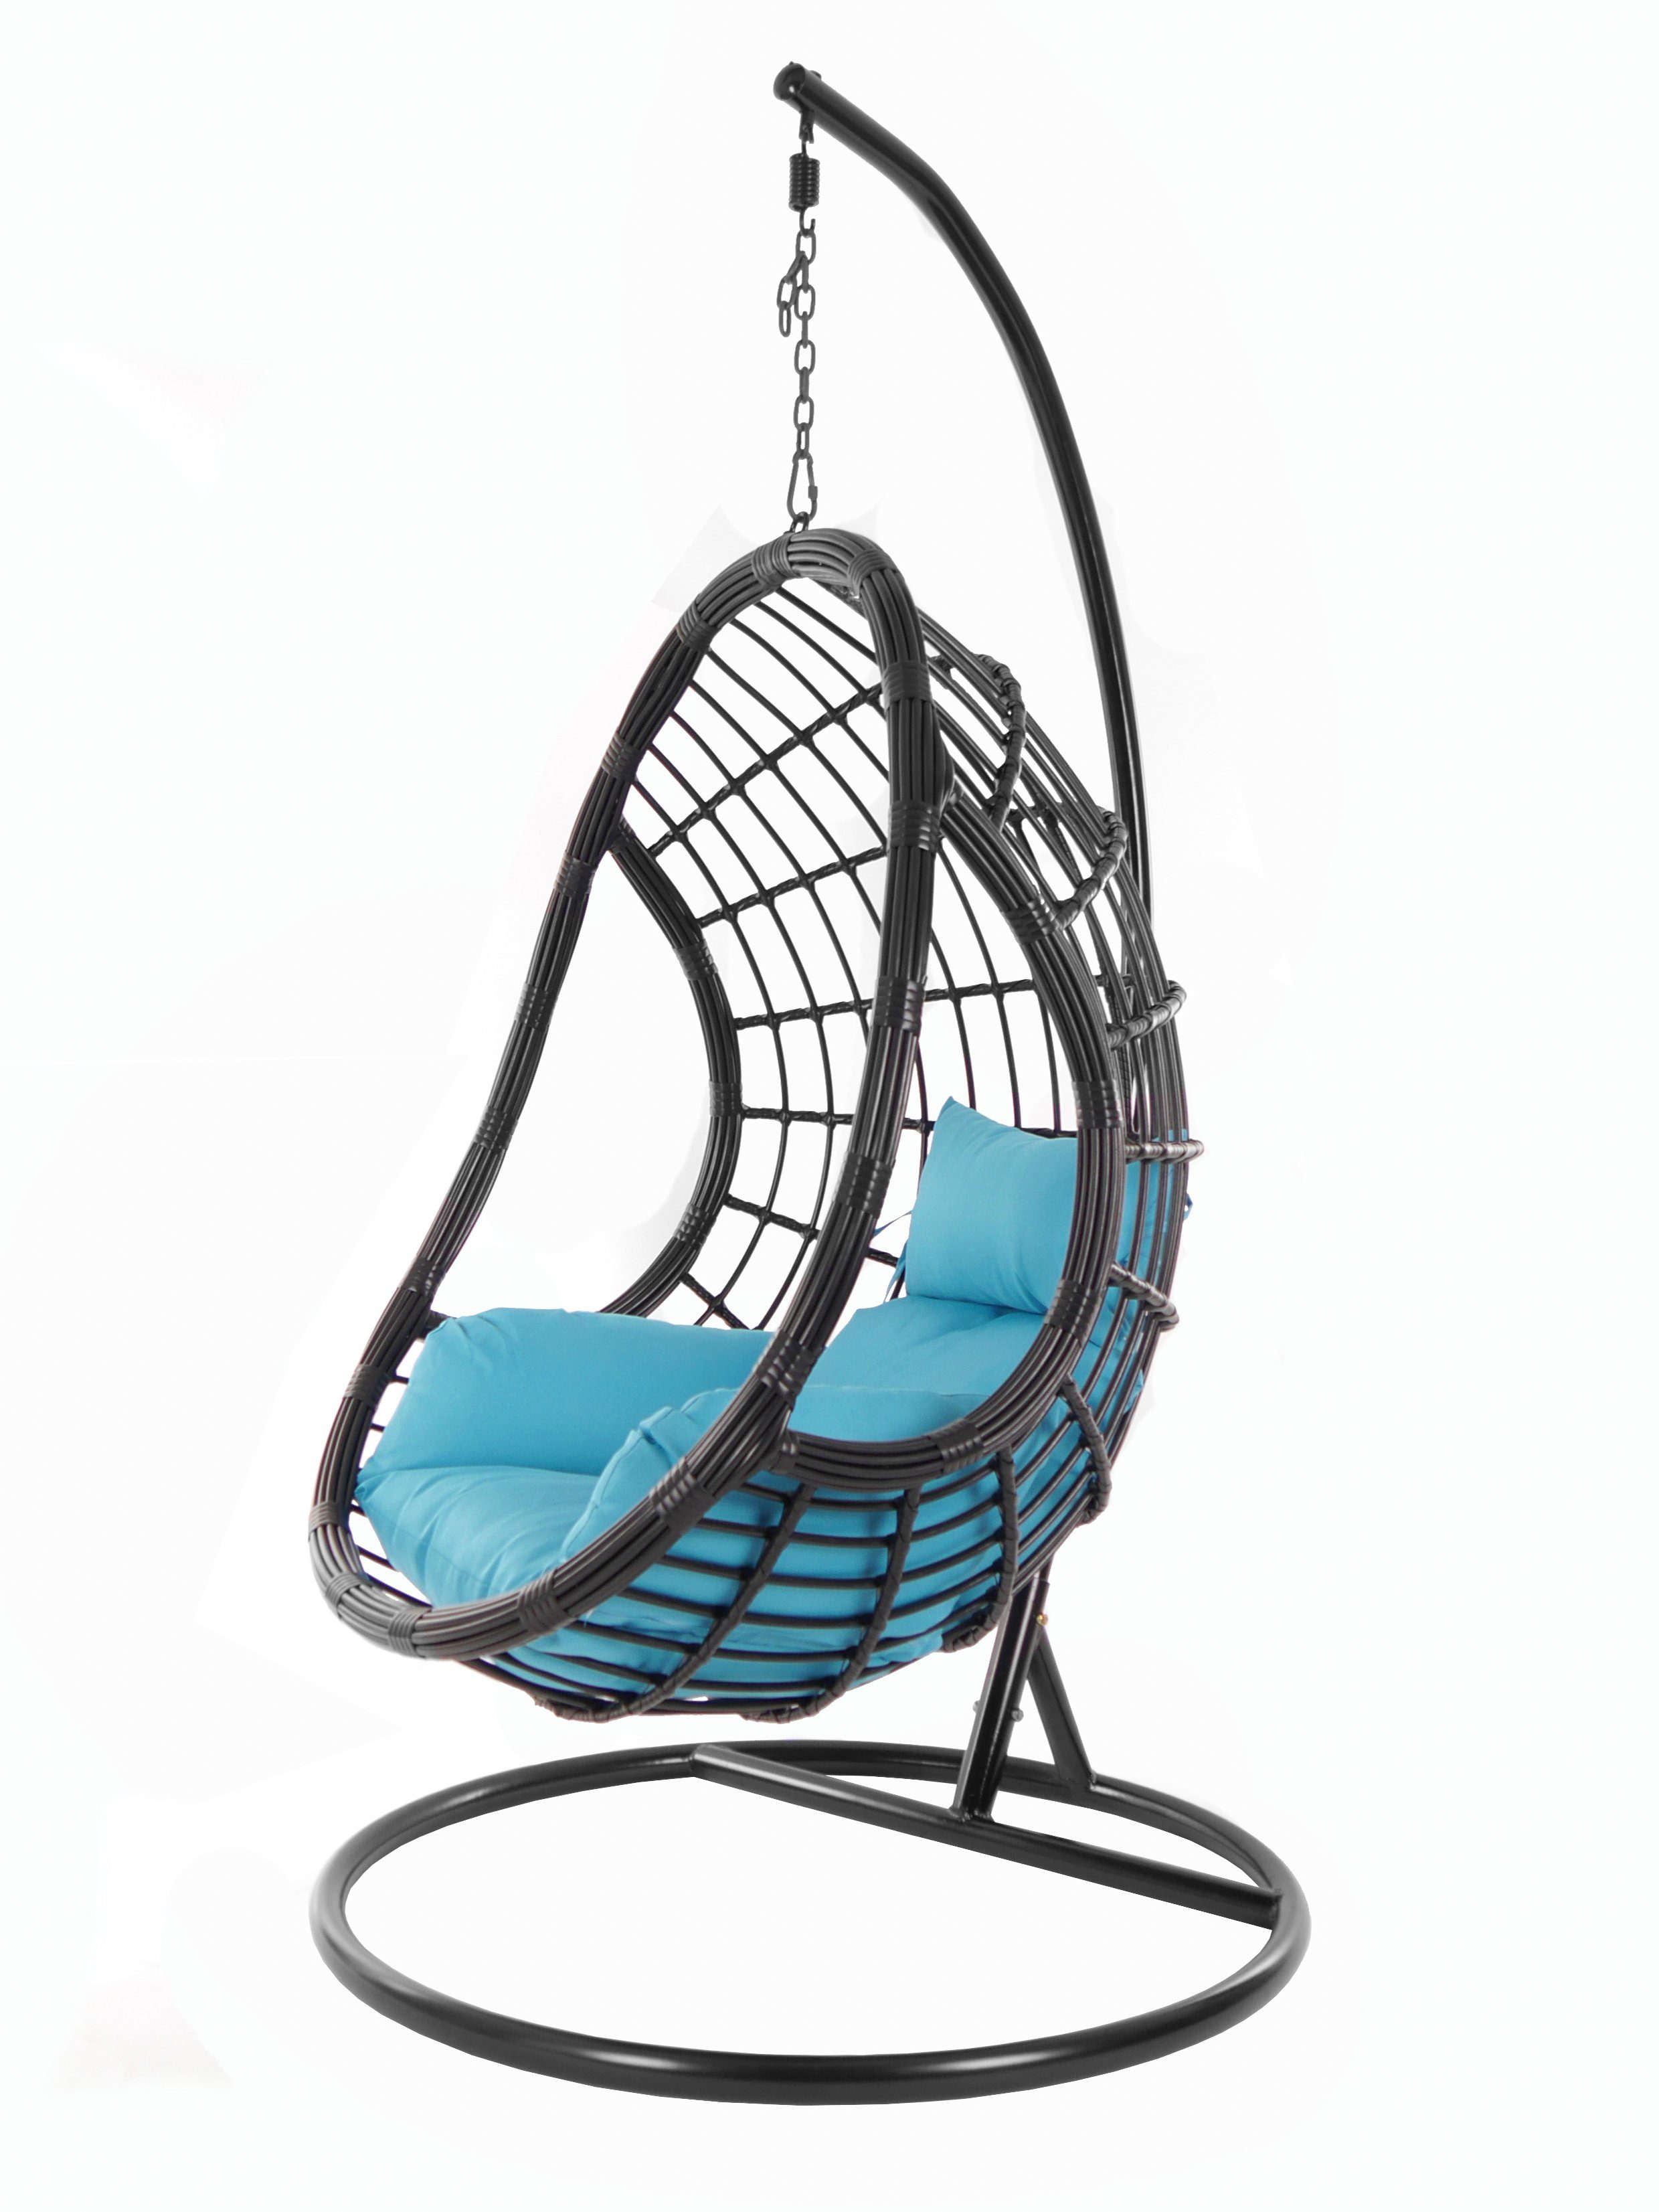 KIDEO Hängesessel PALMANOVA black, Schwebesessel, Swing Chair, Hängesessel mit Gestell und Kissen, Nest-Kissen hellblau (5050 skyblue)